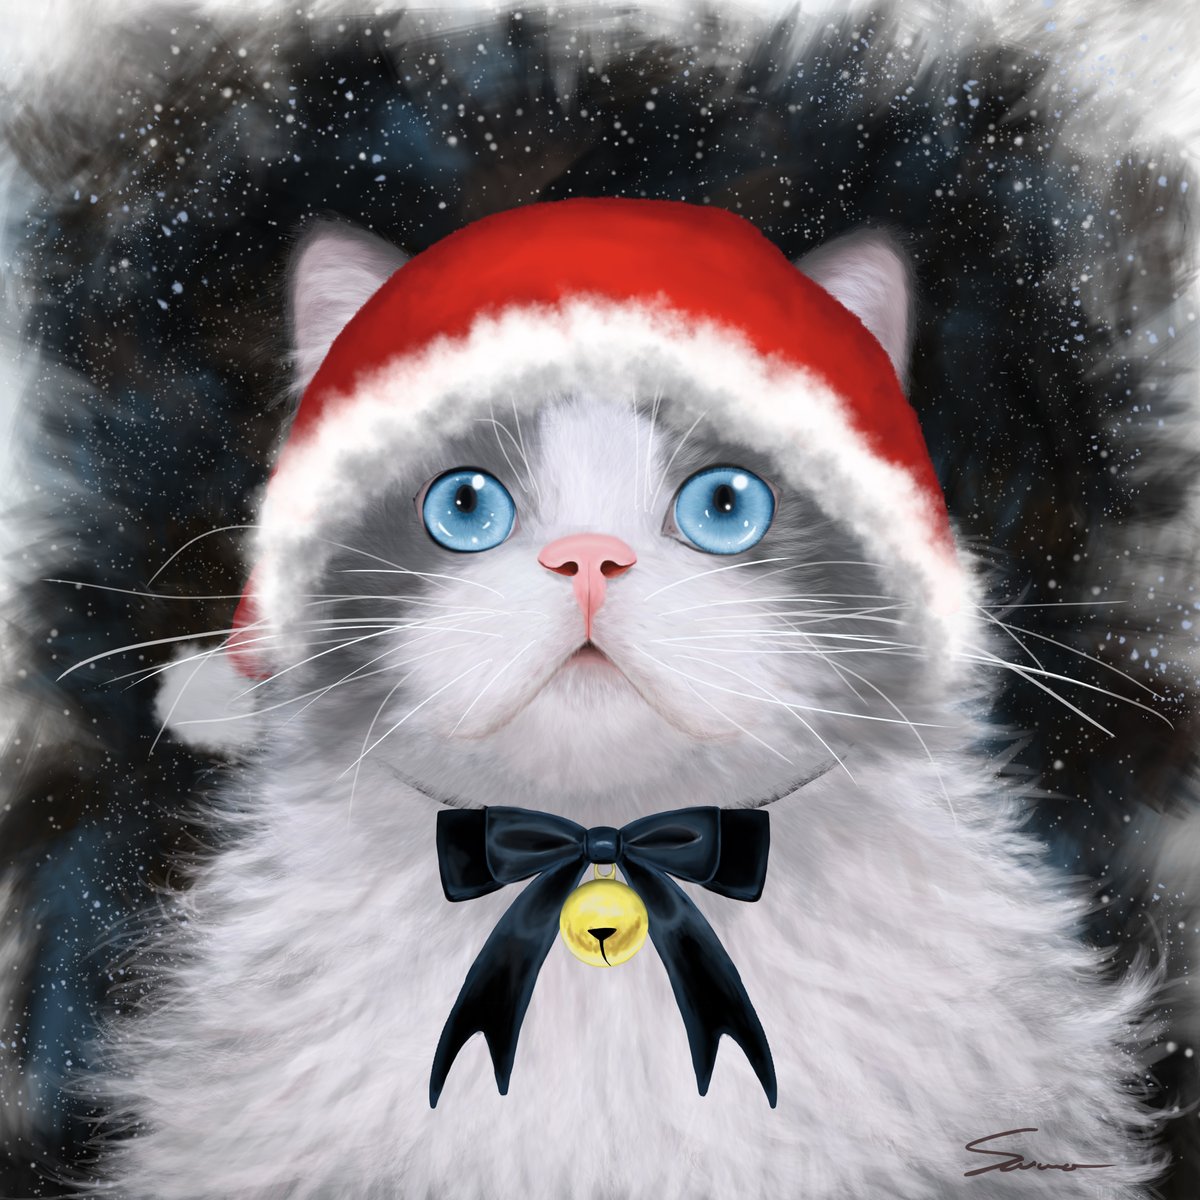 さわ 休み On Twitter メリークリスマス デザフェスで意外にも好評だったサンタねこです お目目キラキラのぽけ顔です イラスト デジタル絵 ねこ ネコ